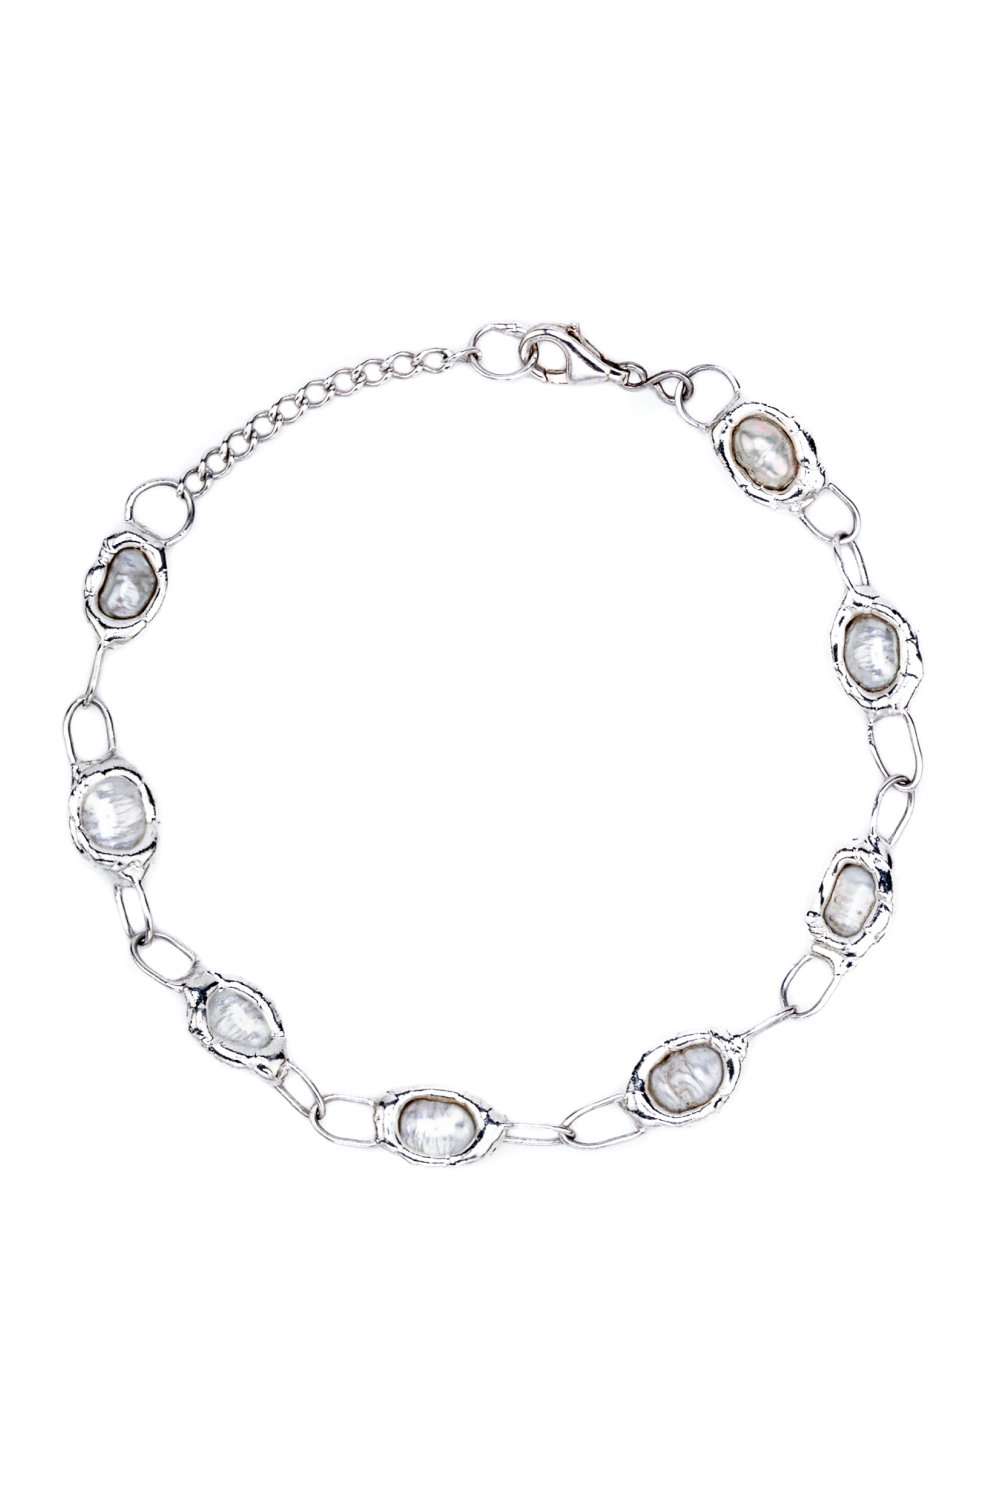 Silver Pearl Link Chain Bracelet - Tea & Tequila